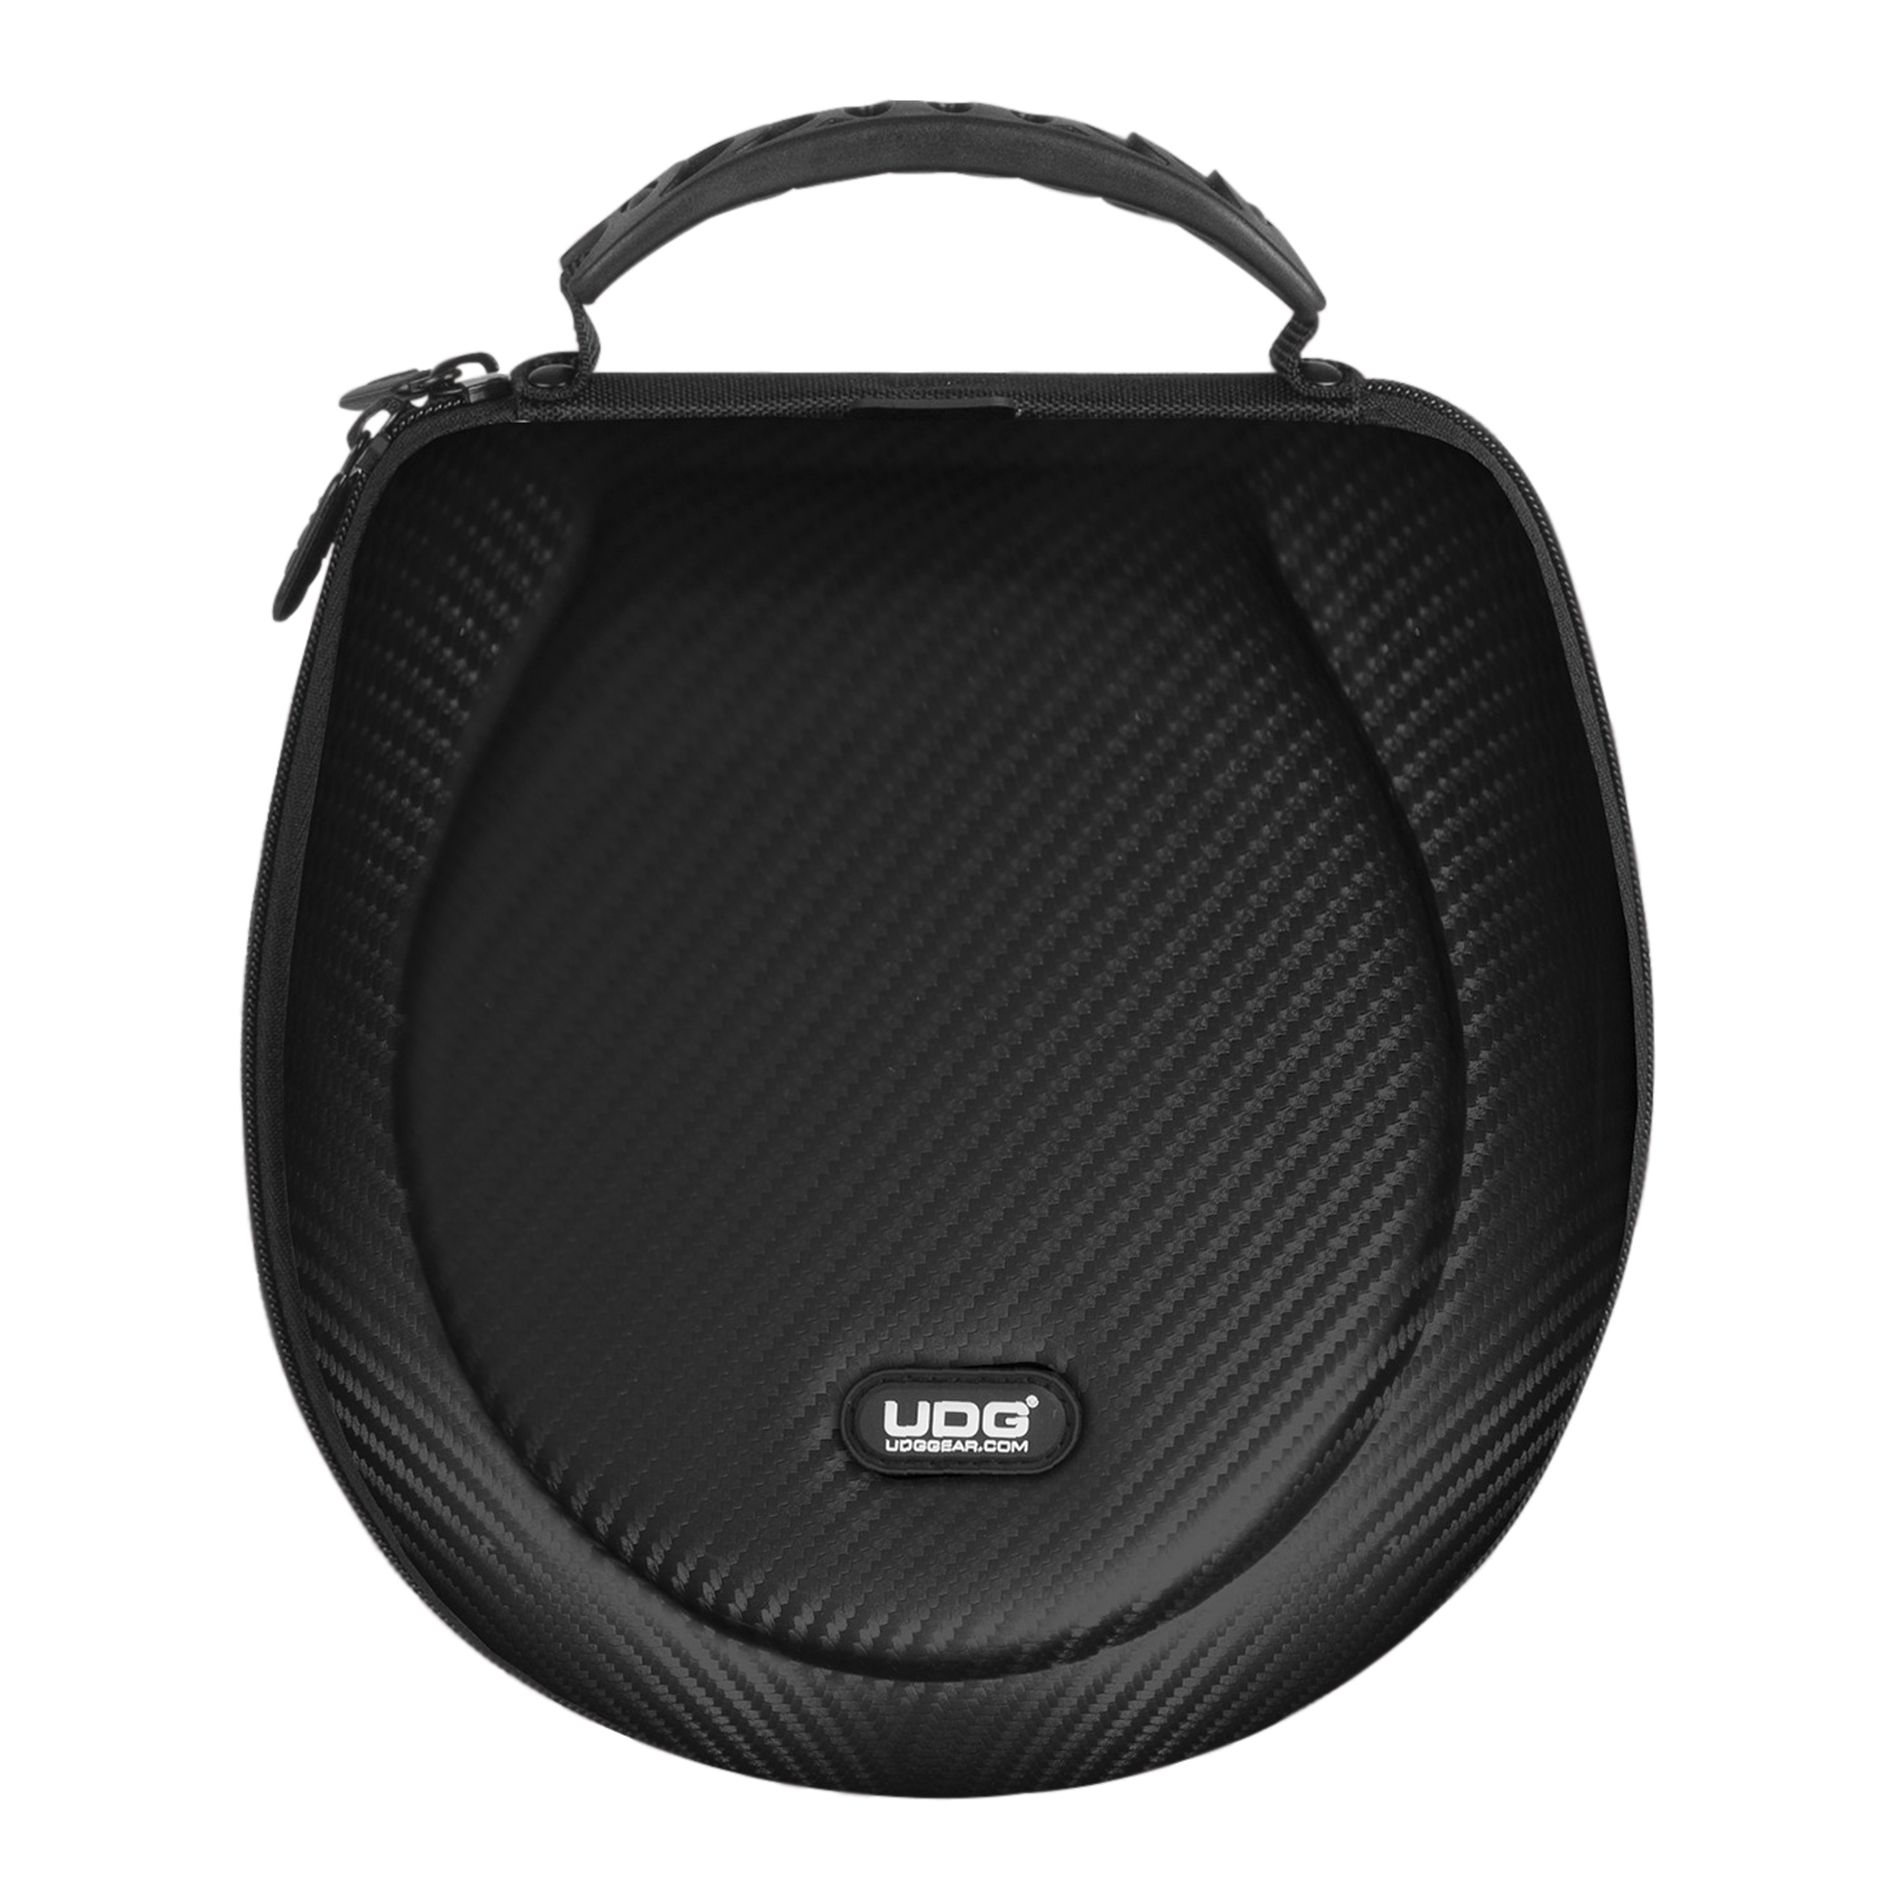 Udg U 8202 Bl - Koffer & Tasche für Kopfhörer - Variation 2